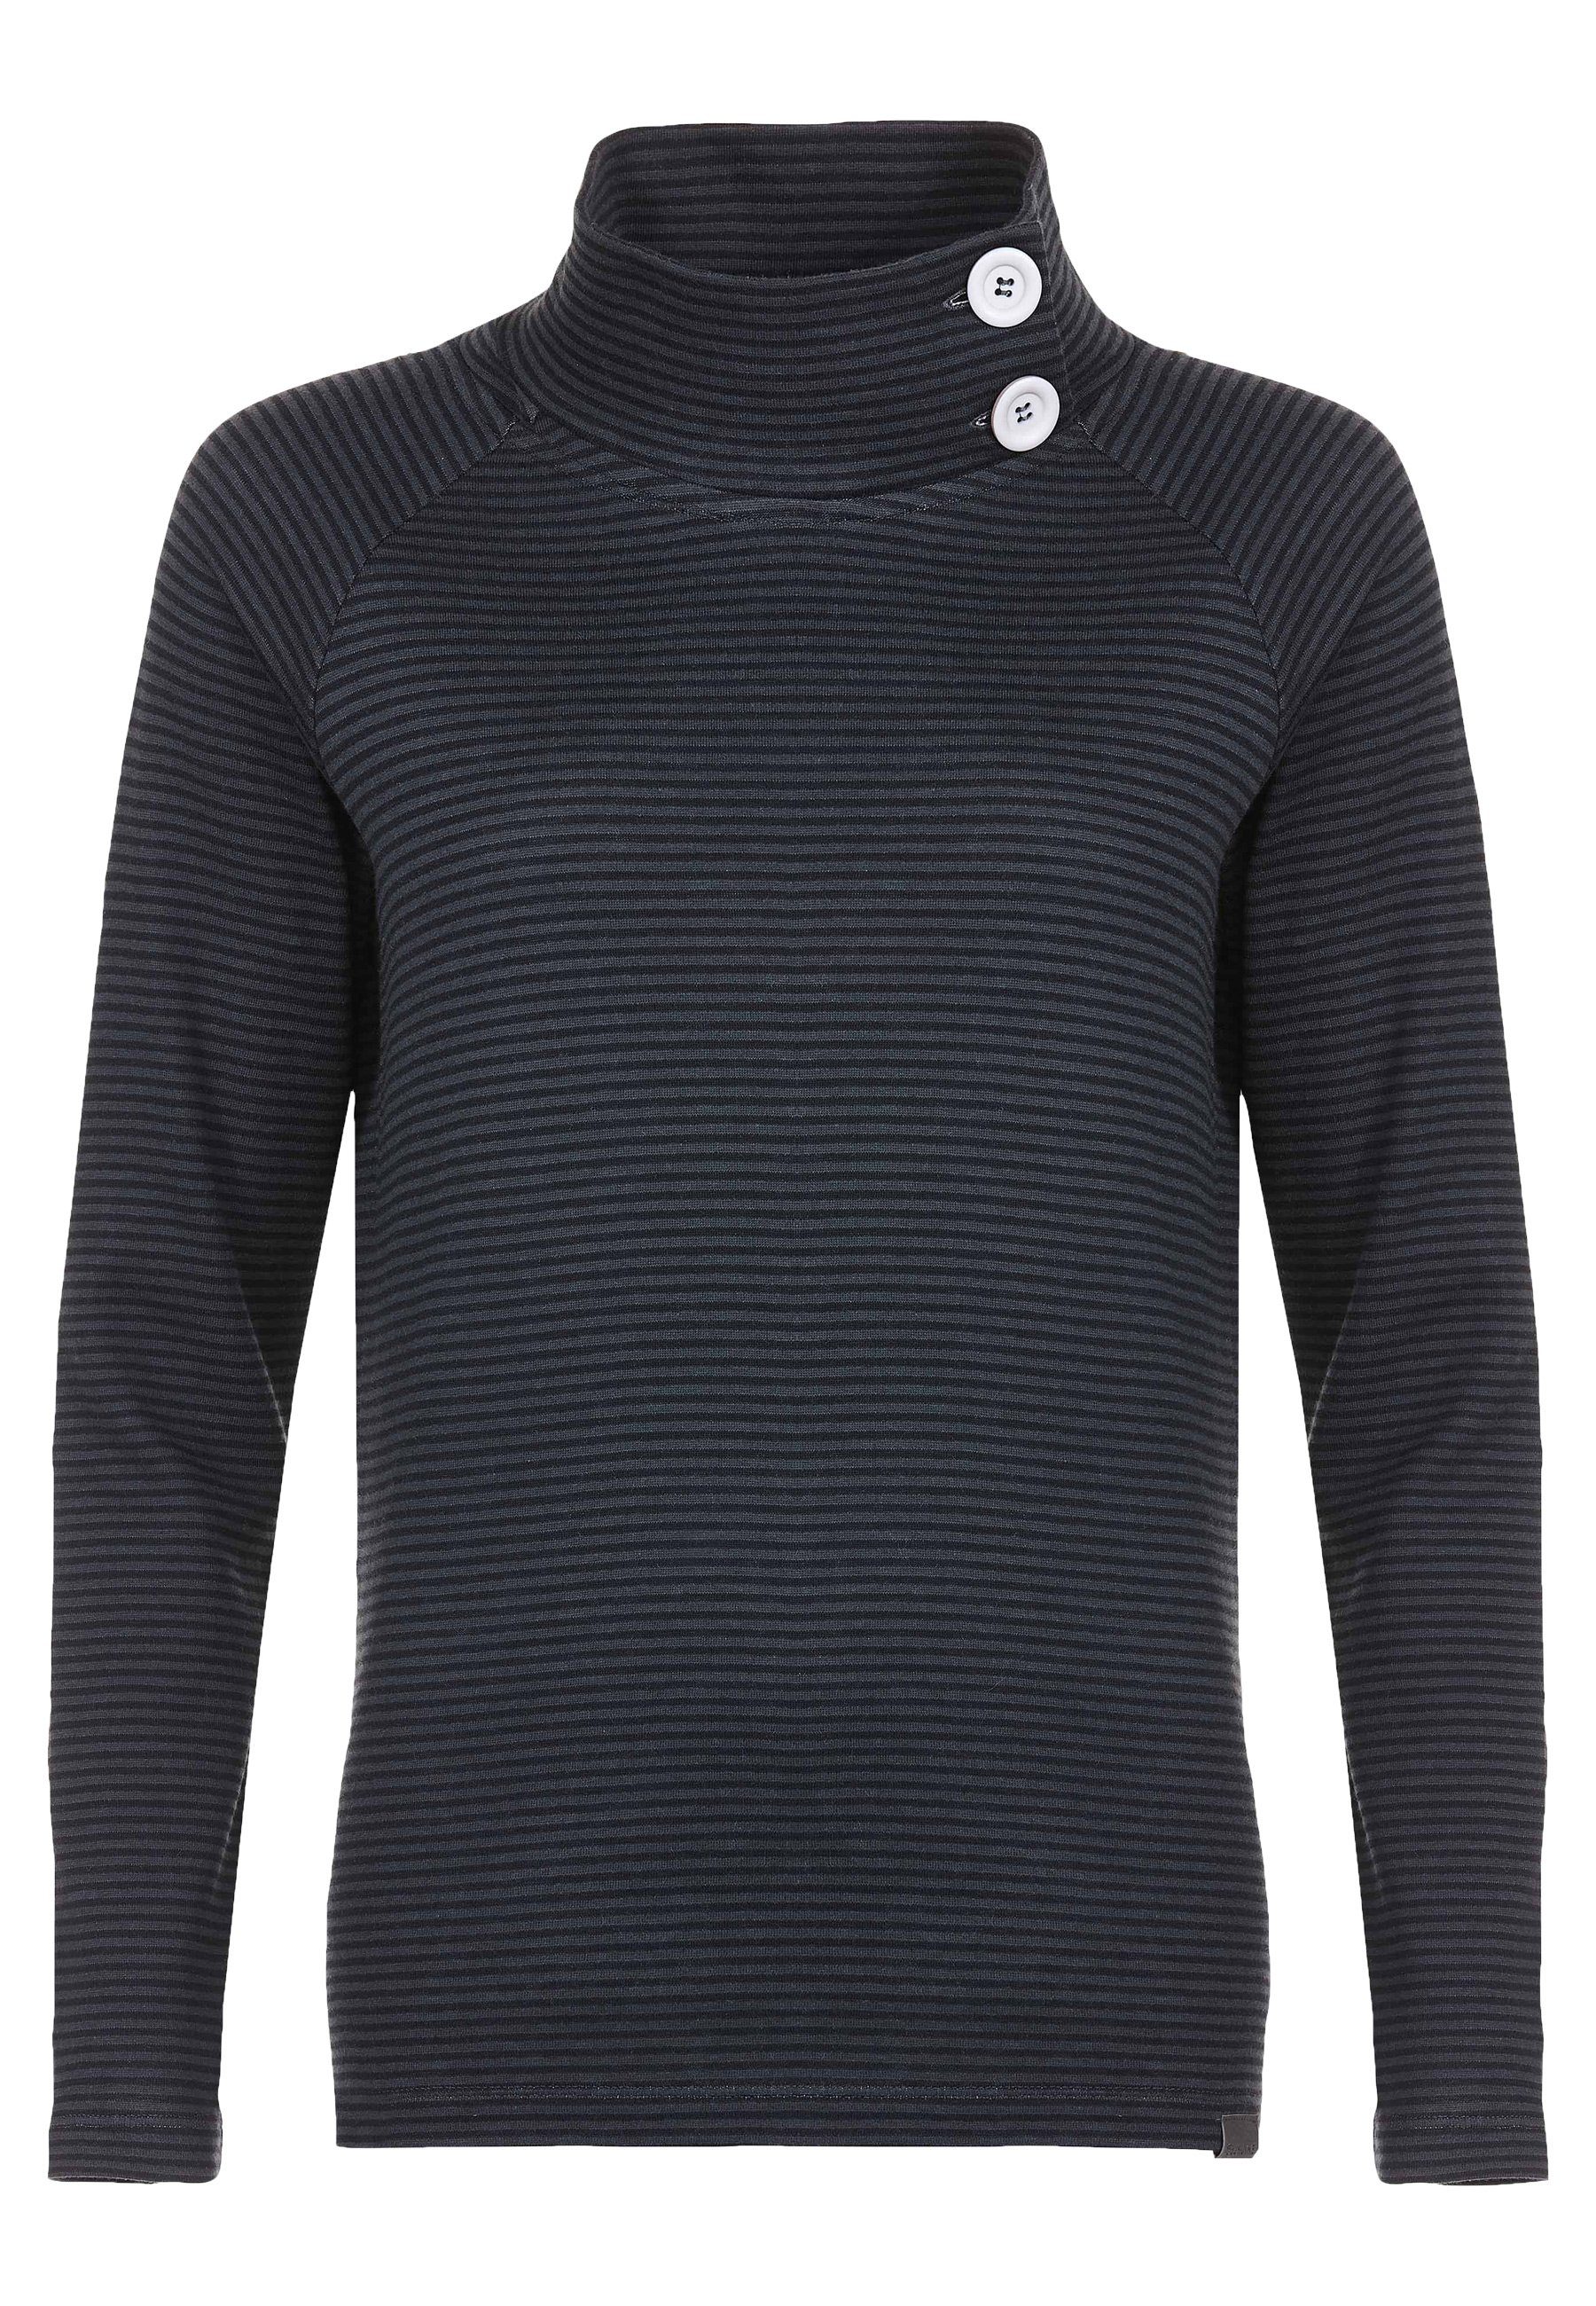 Elkline Sweatshirt By the Sea Streifen Longsleeve Stehkragen mit Knöpfen anthra - black